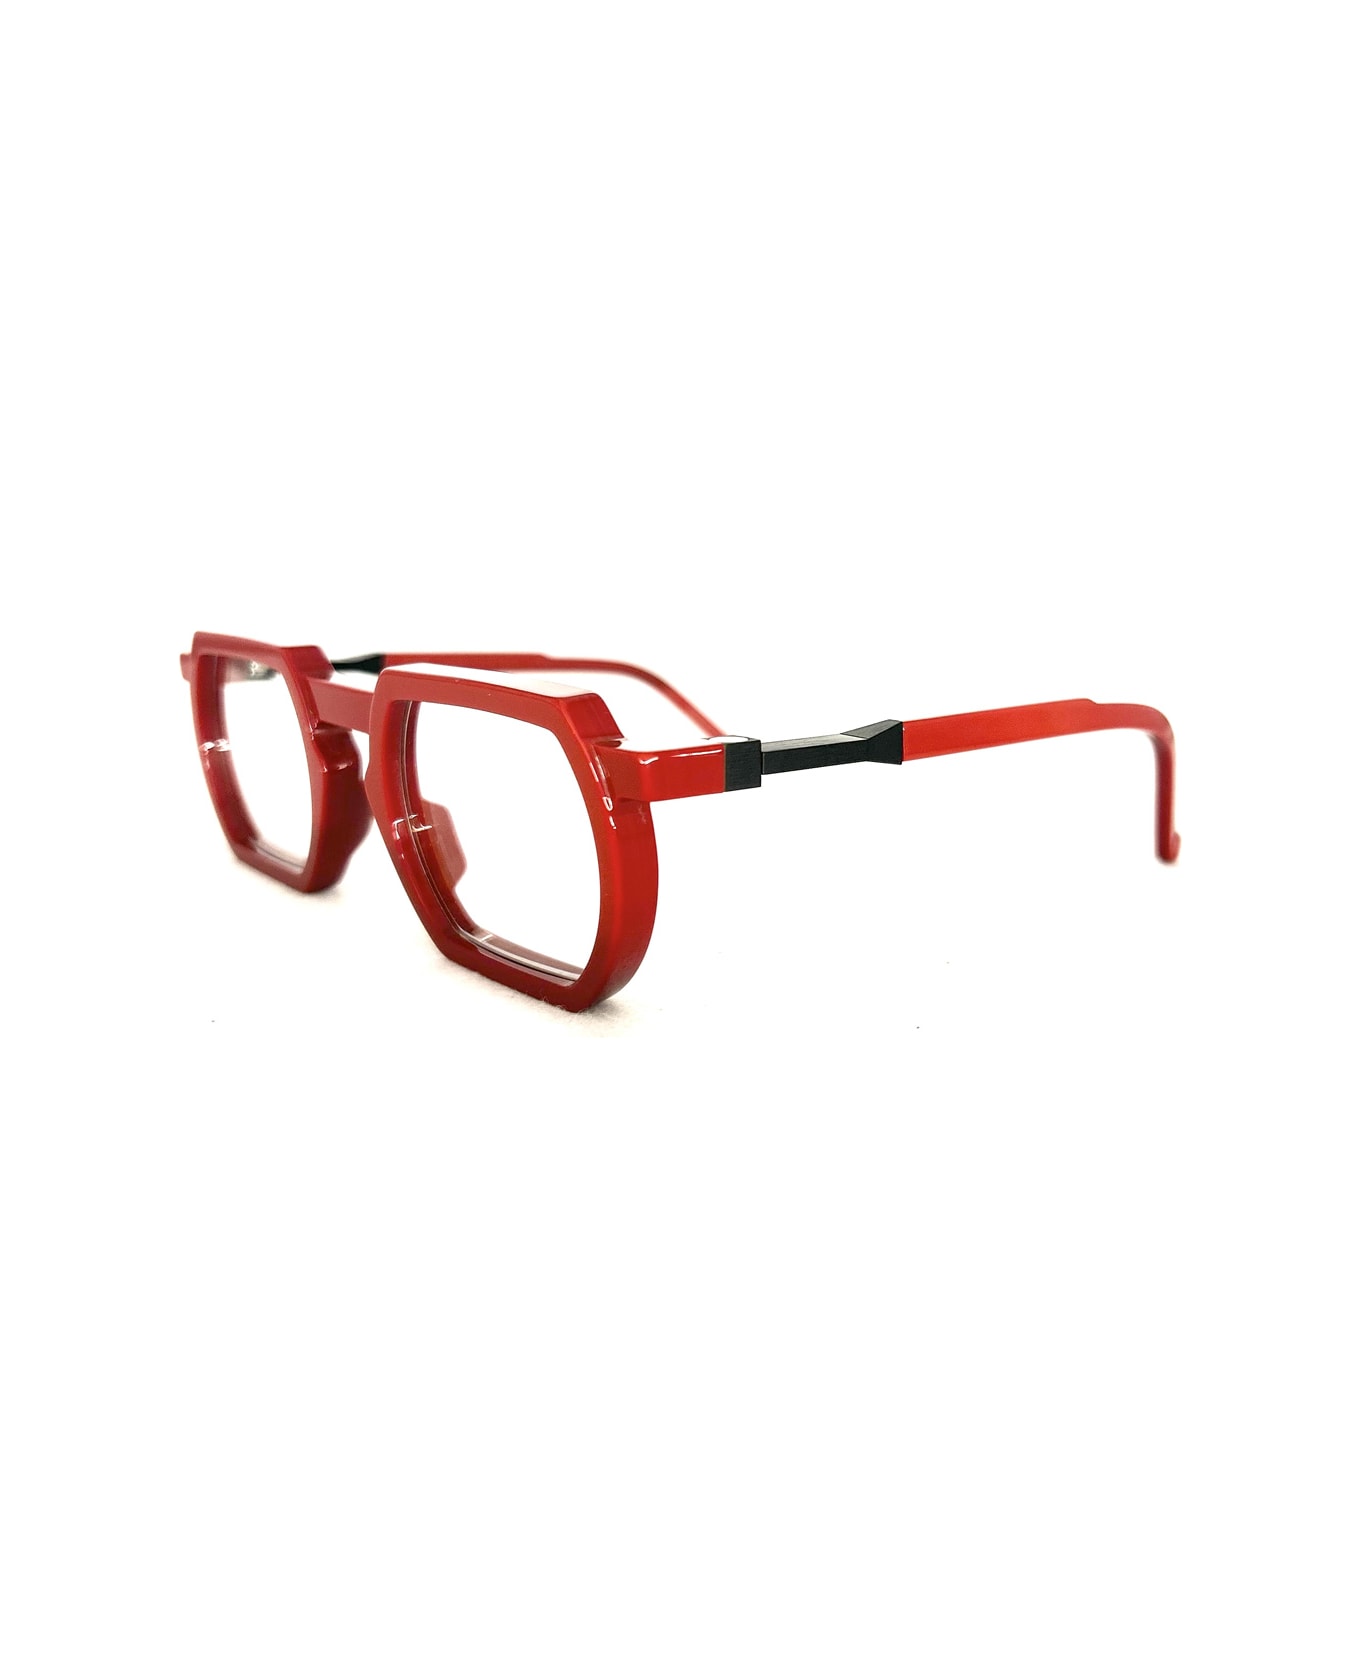 VAVA Wl0031 Red Glasses - Rosso